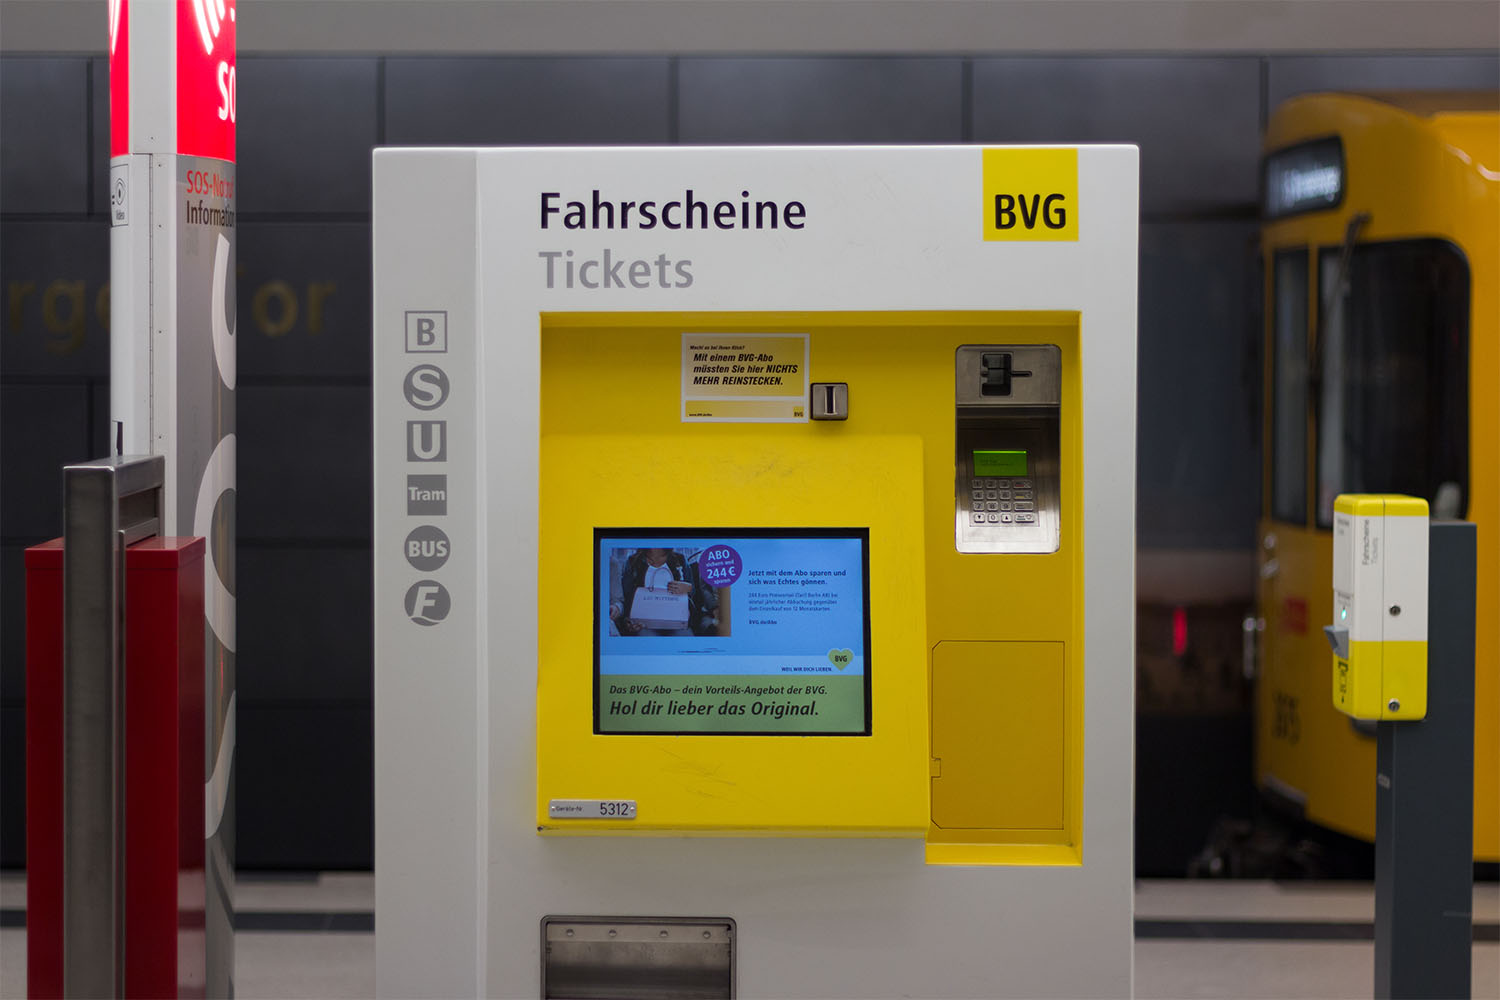 מכונה למכירת כרטיסים בתחנת המטרו בברלין (צילום אילוסטרציה: שאטרסטוק)